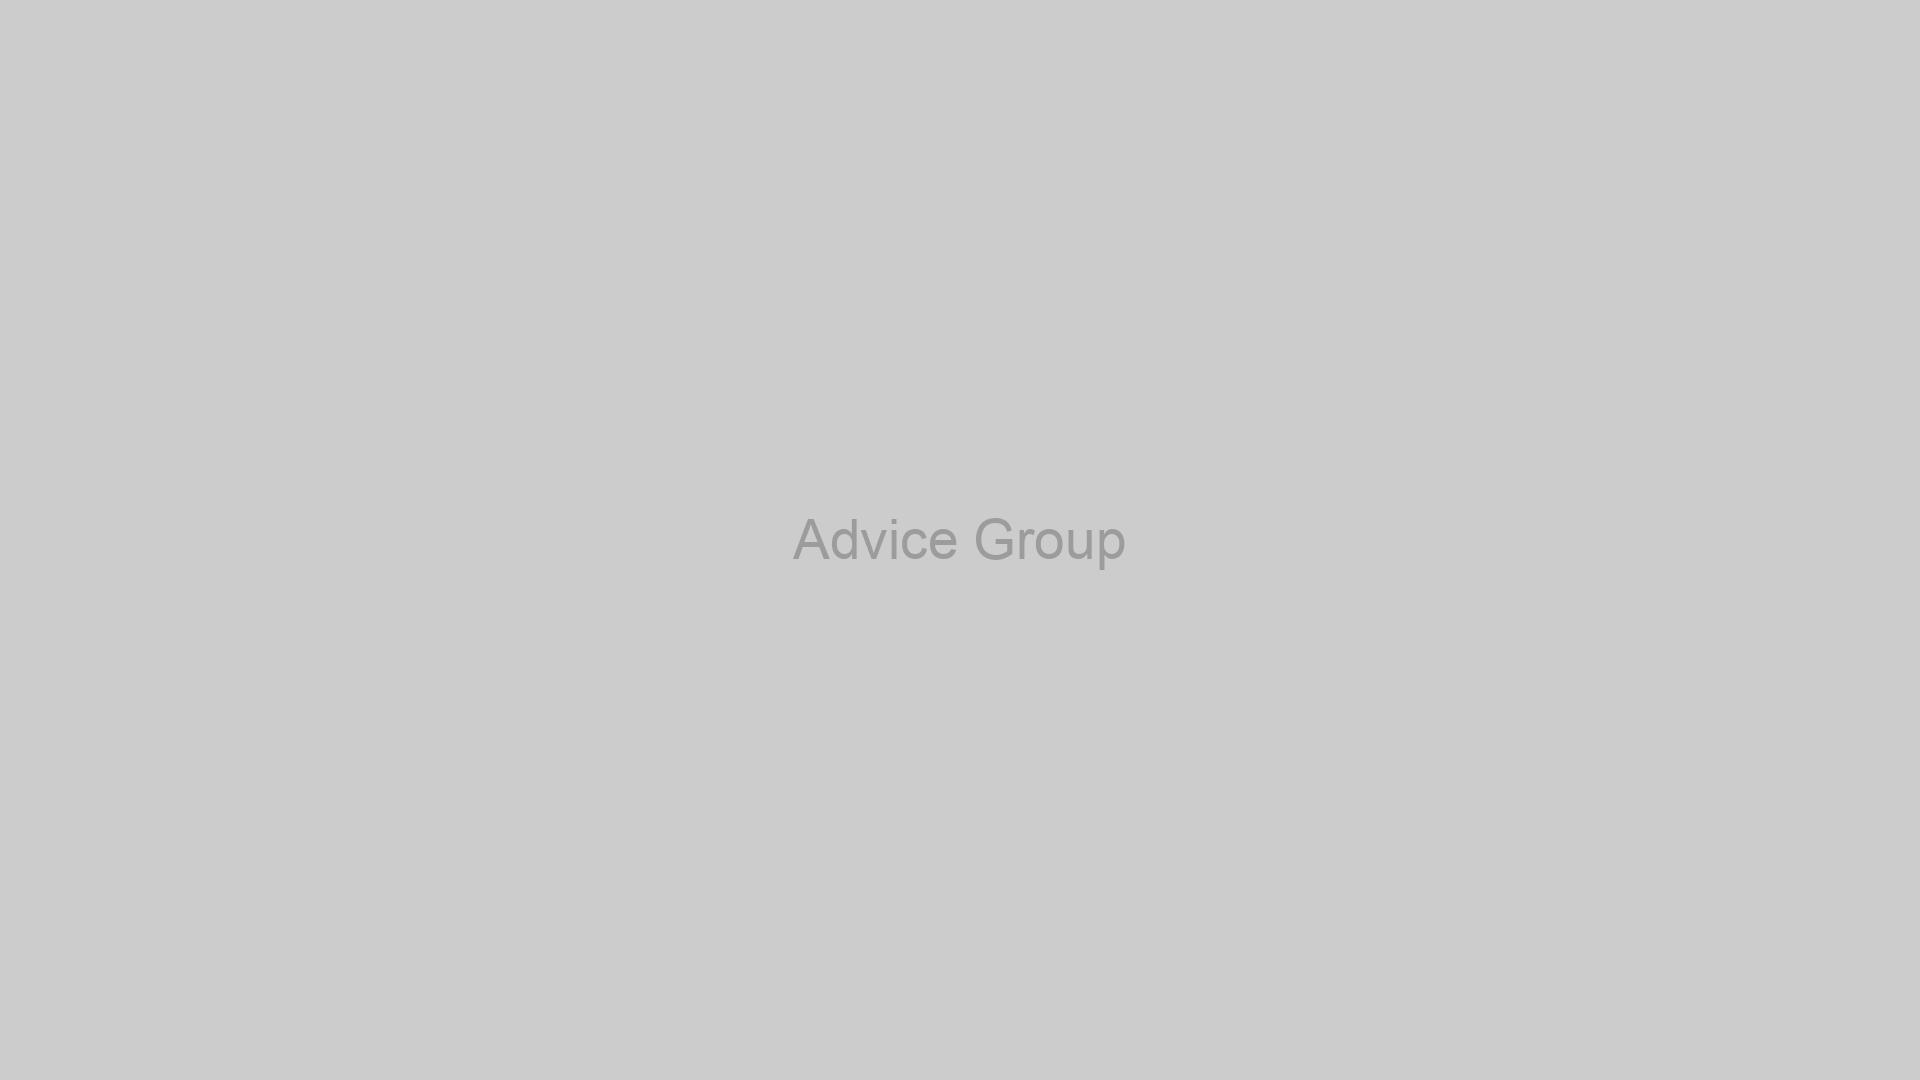 Advice Group fallback image